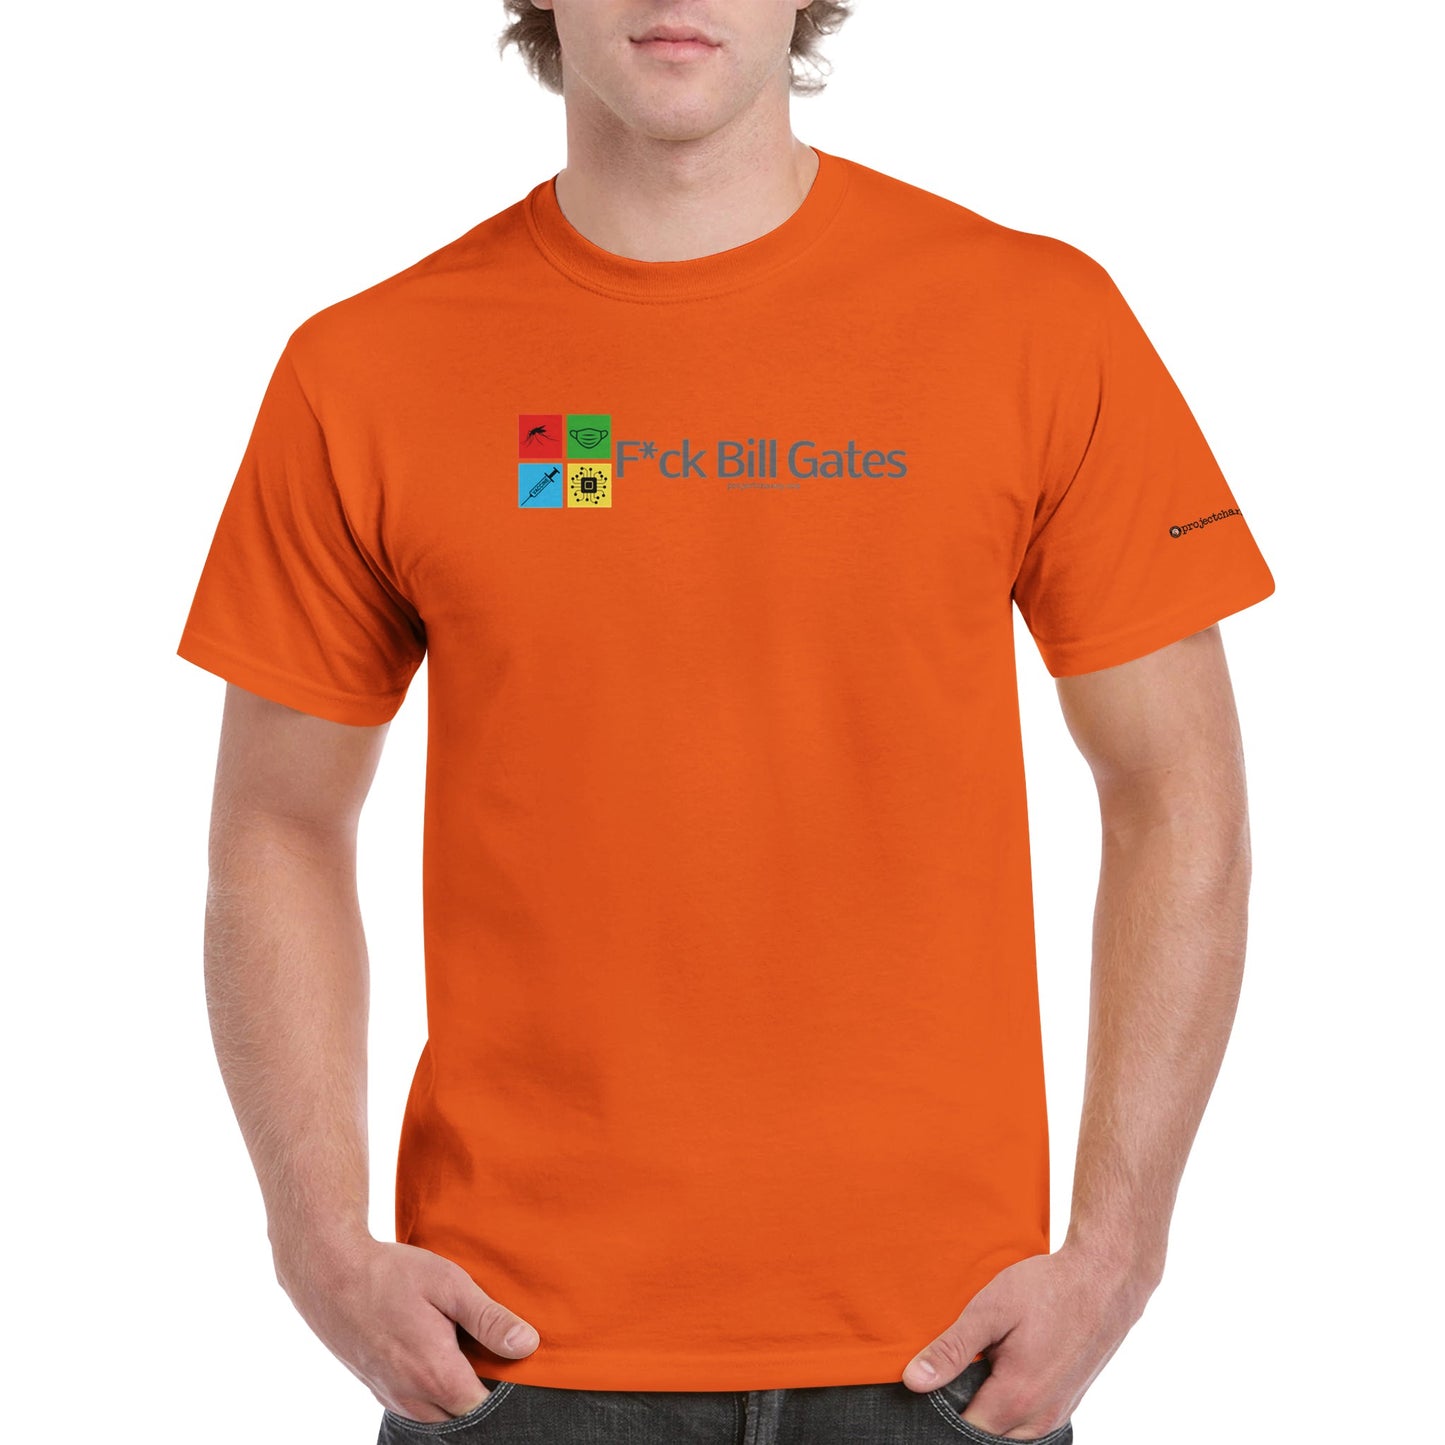 F*ck Bill Gates Crewneck T-shirt